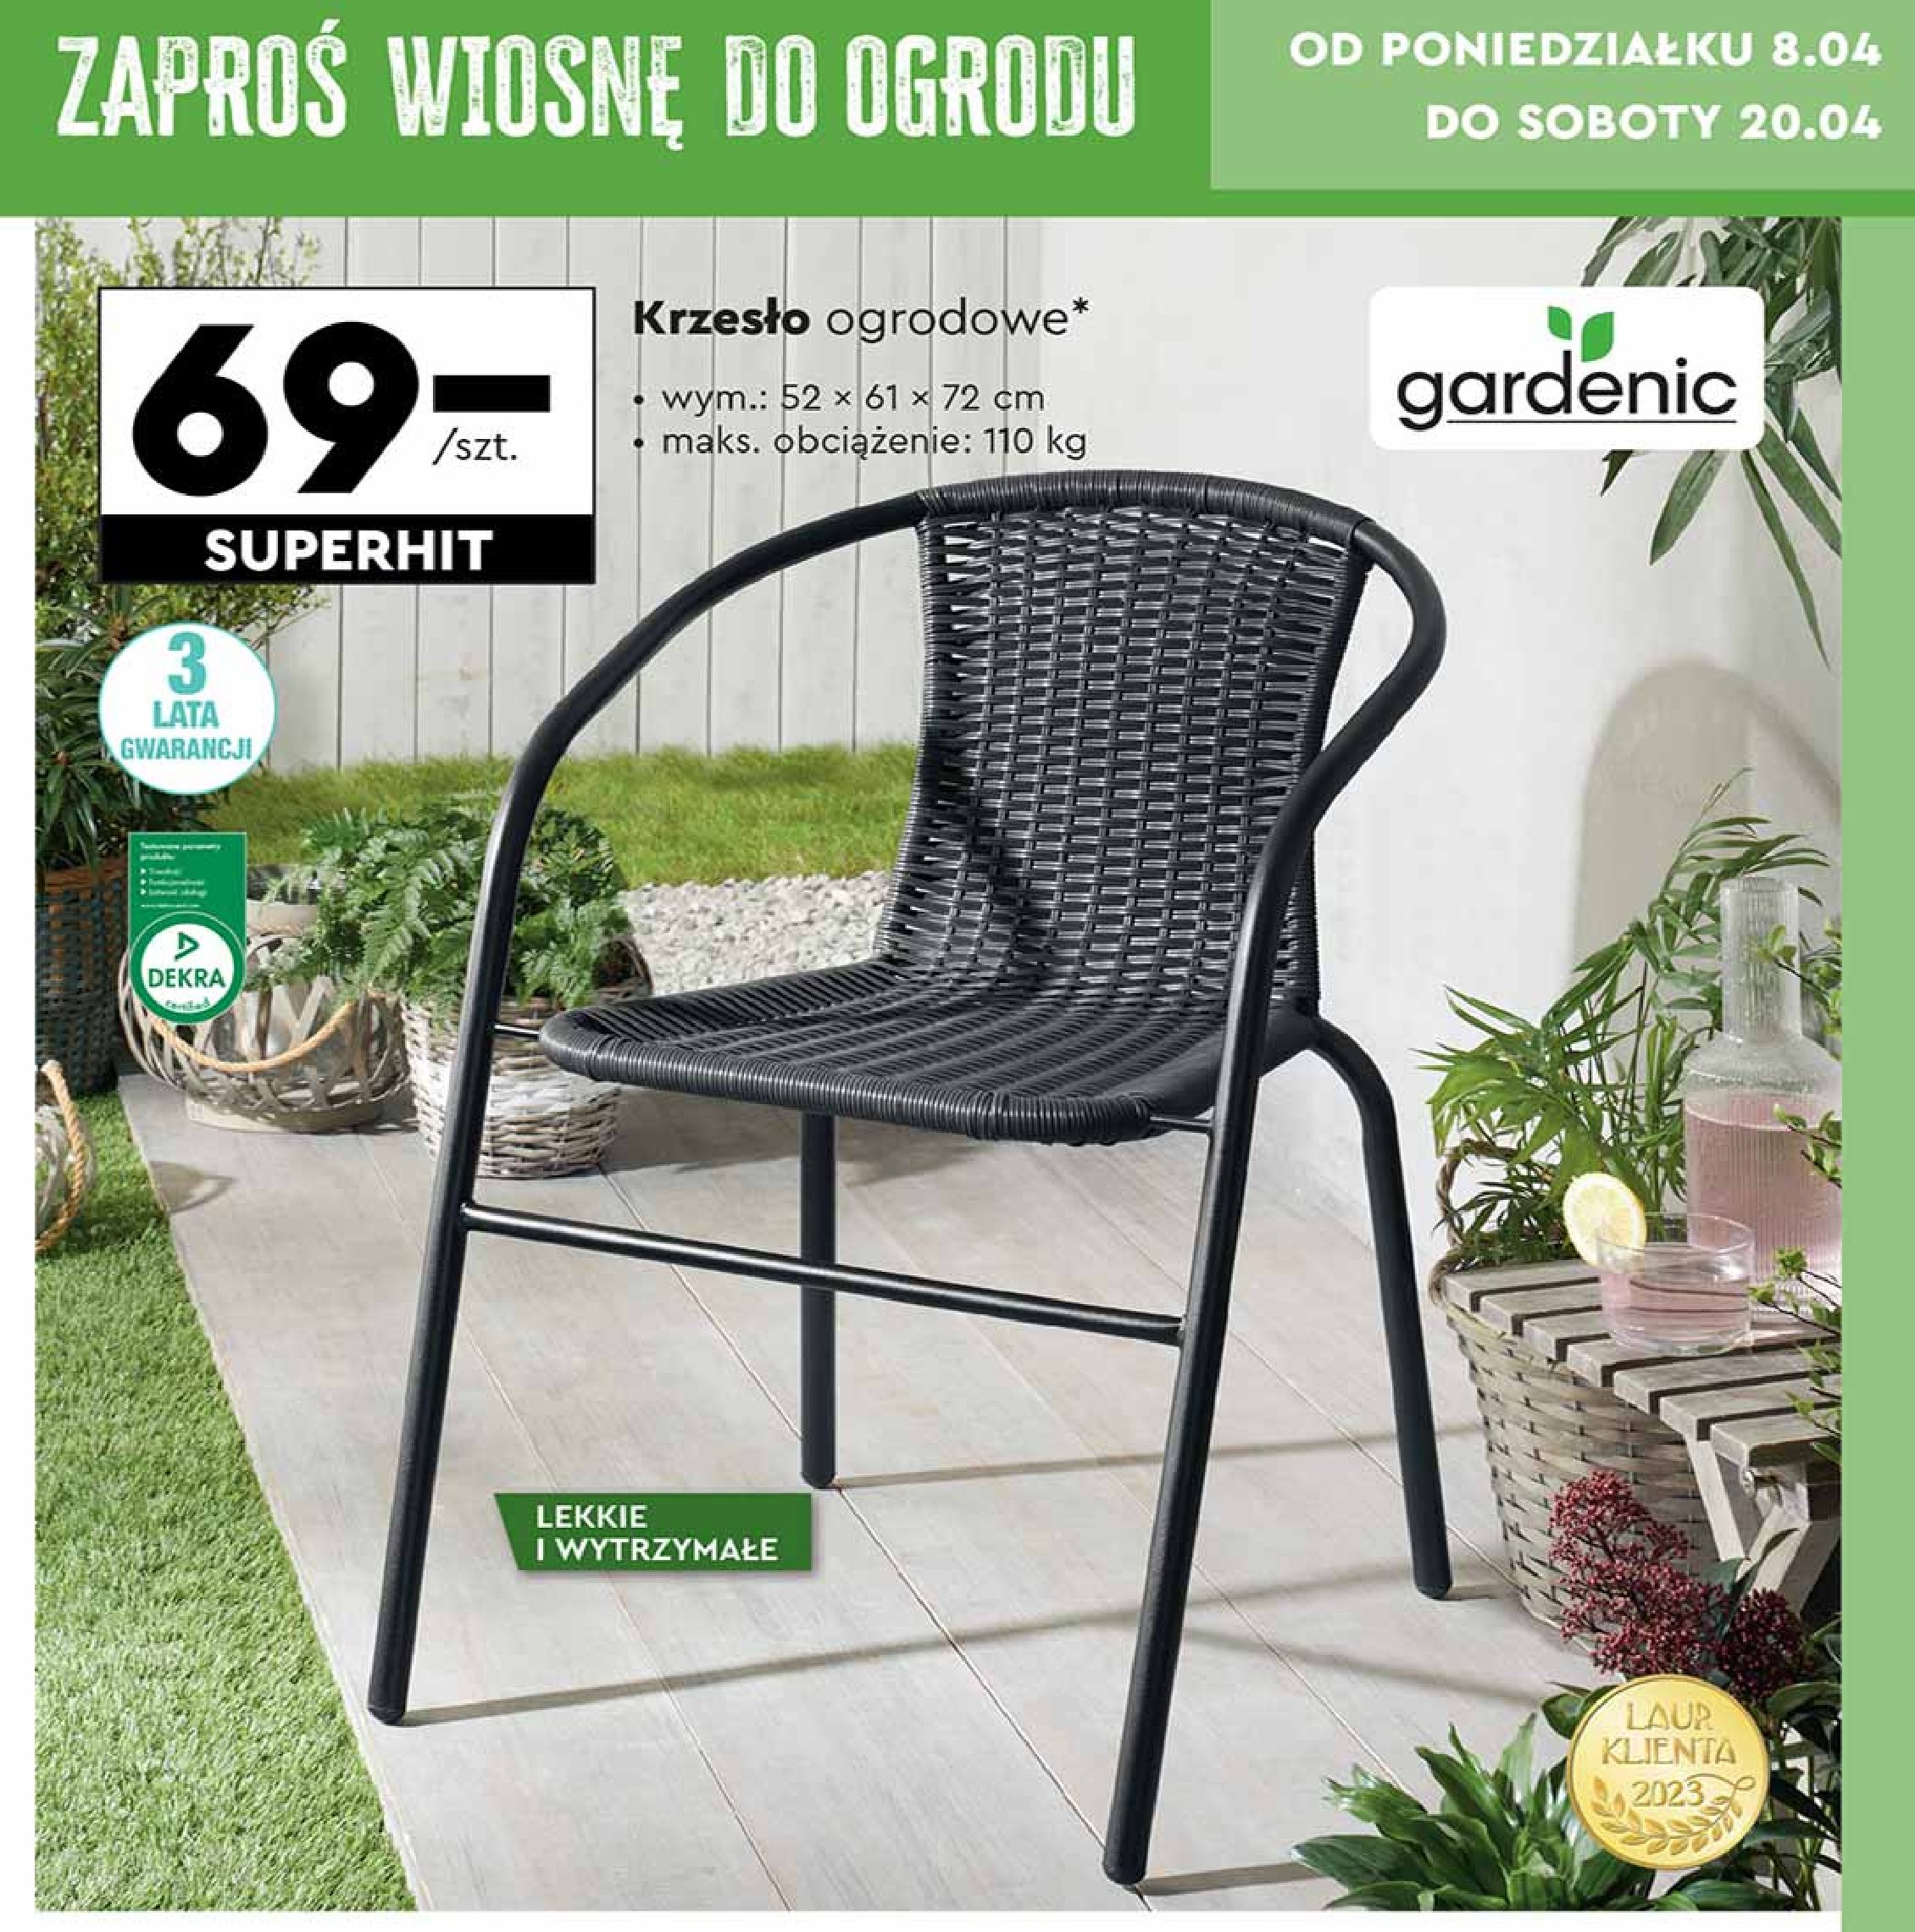 Krzesło ogrodowe 52 x 61 x 72 cm Gardenic promocja